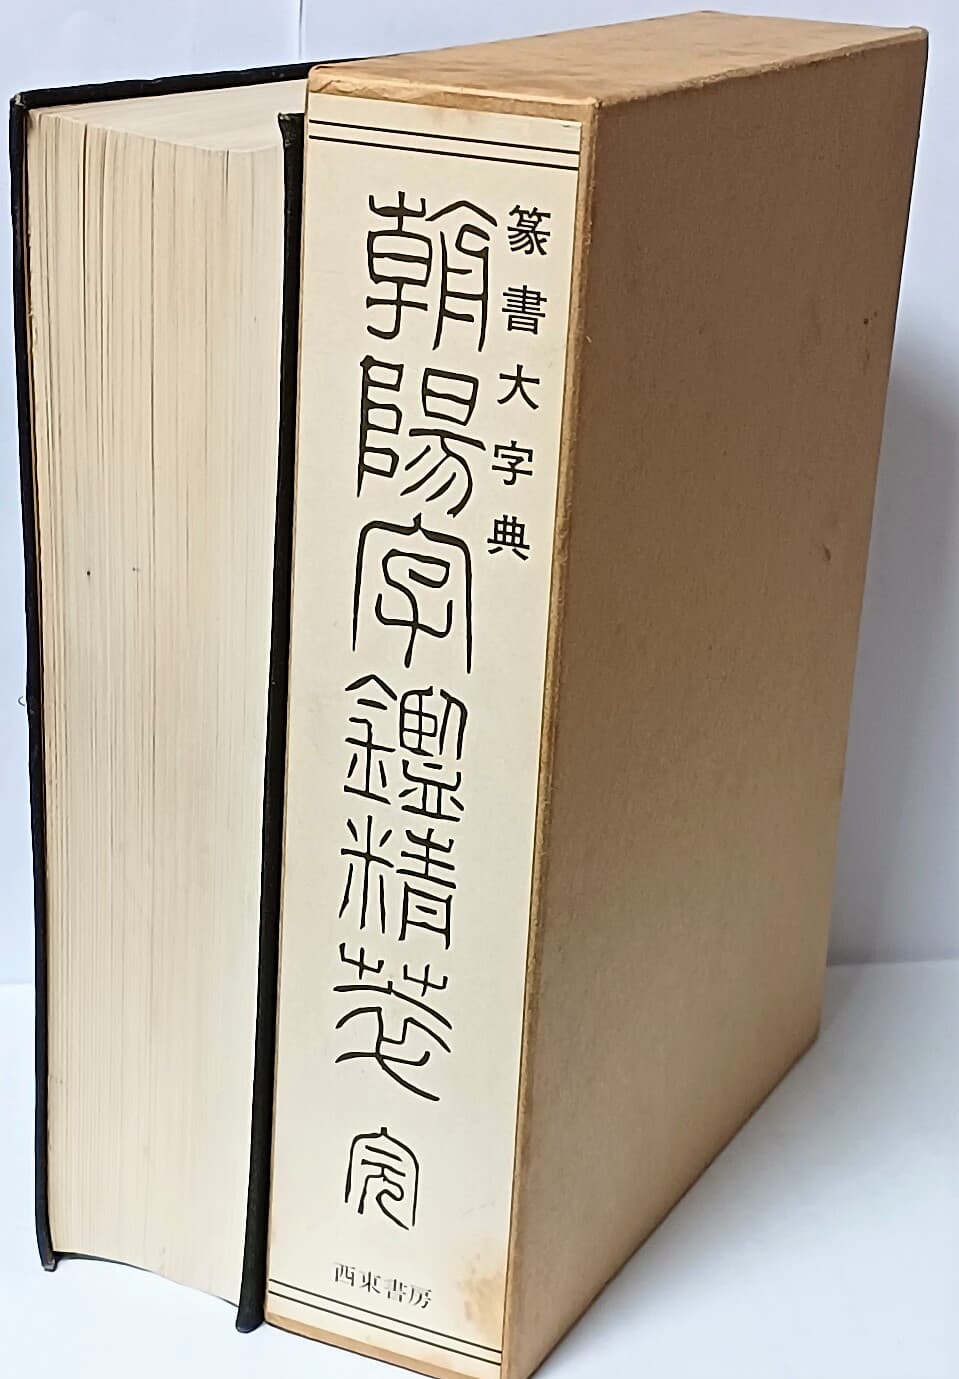 조양자감정화(전서대자전) -서예,전각관련-일본서적-167/220/48,972쪽,케이스-아래설명참조-